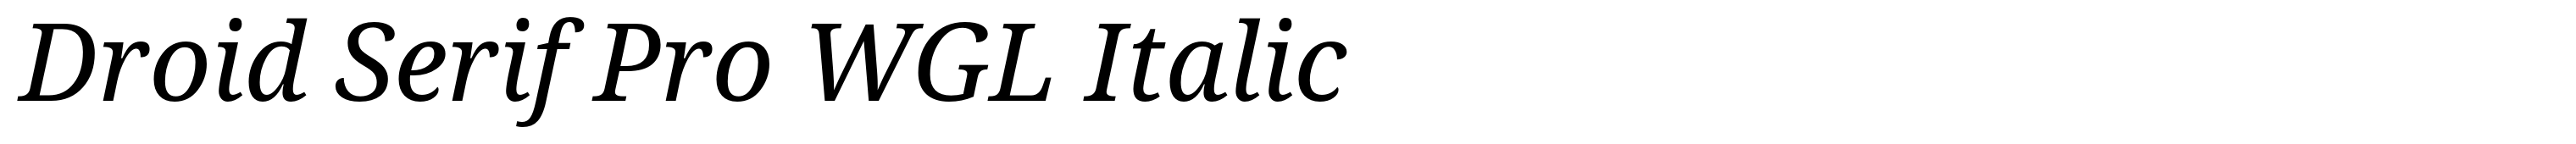 Droid Serif Pro WGL Italic